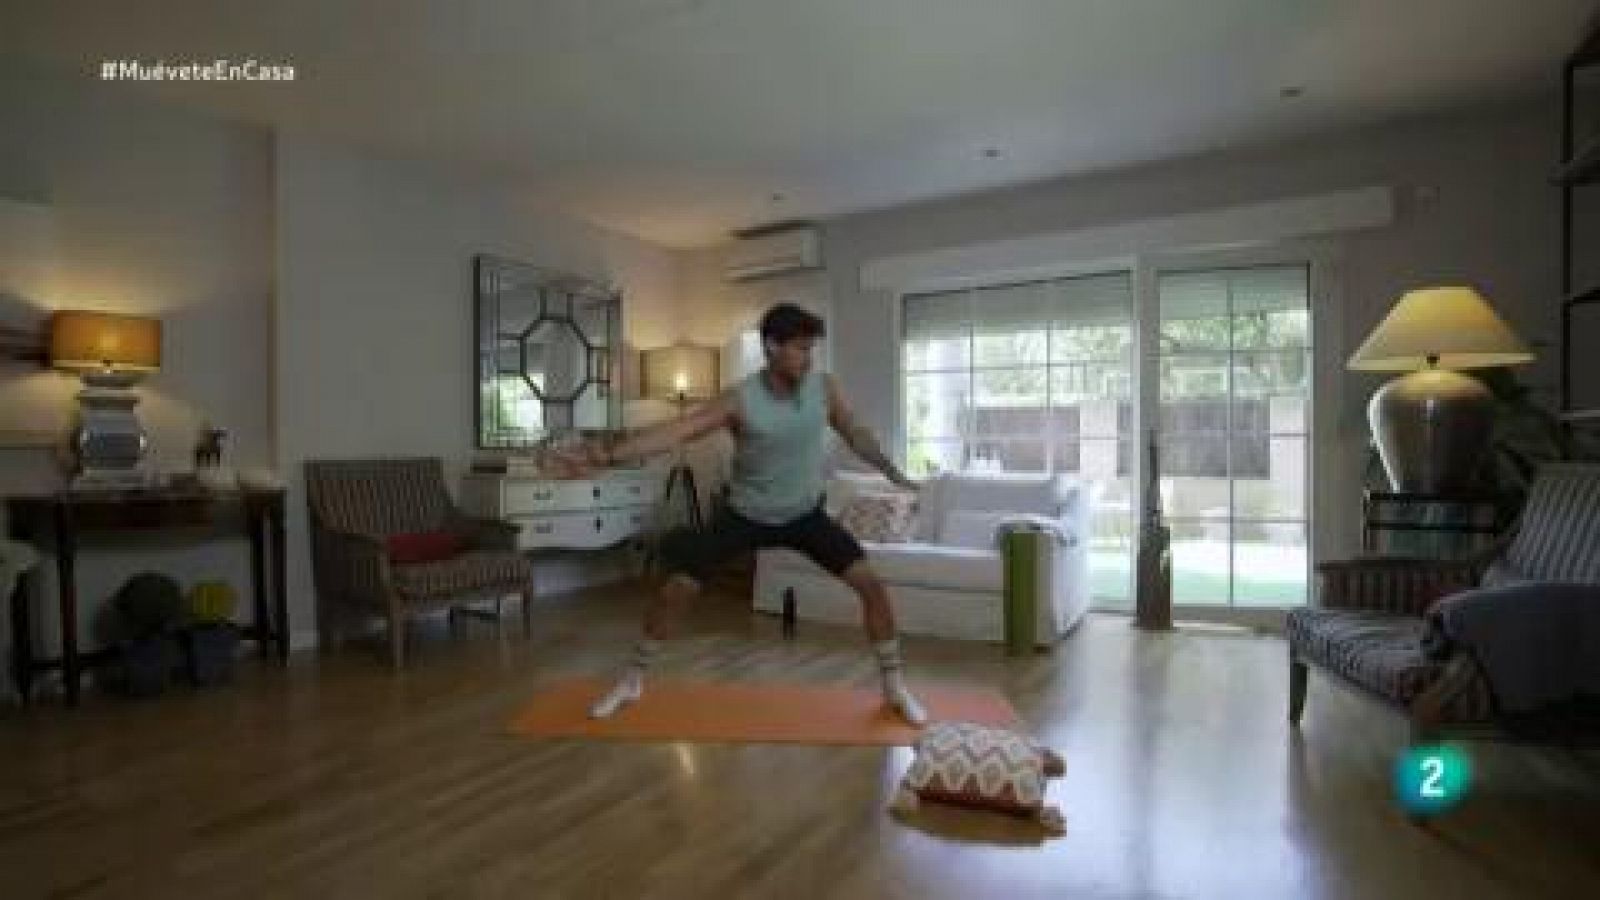 Muévete en casa - ¡Prepara el cuerpo para una clase de flexibilidad y equilibrio!